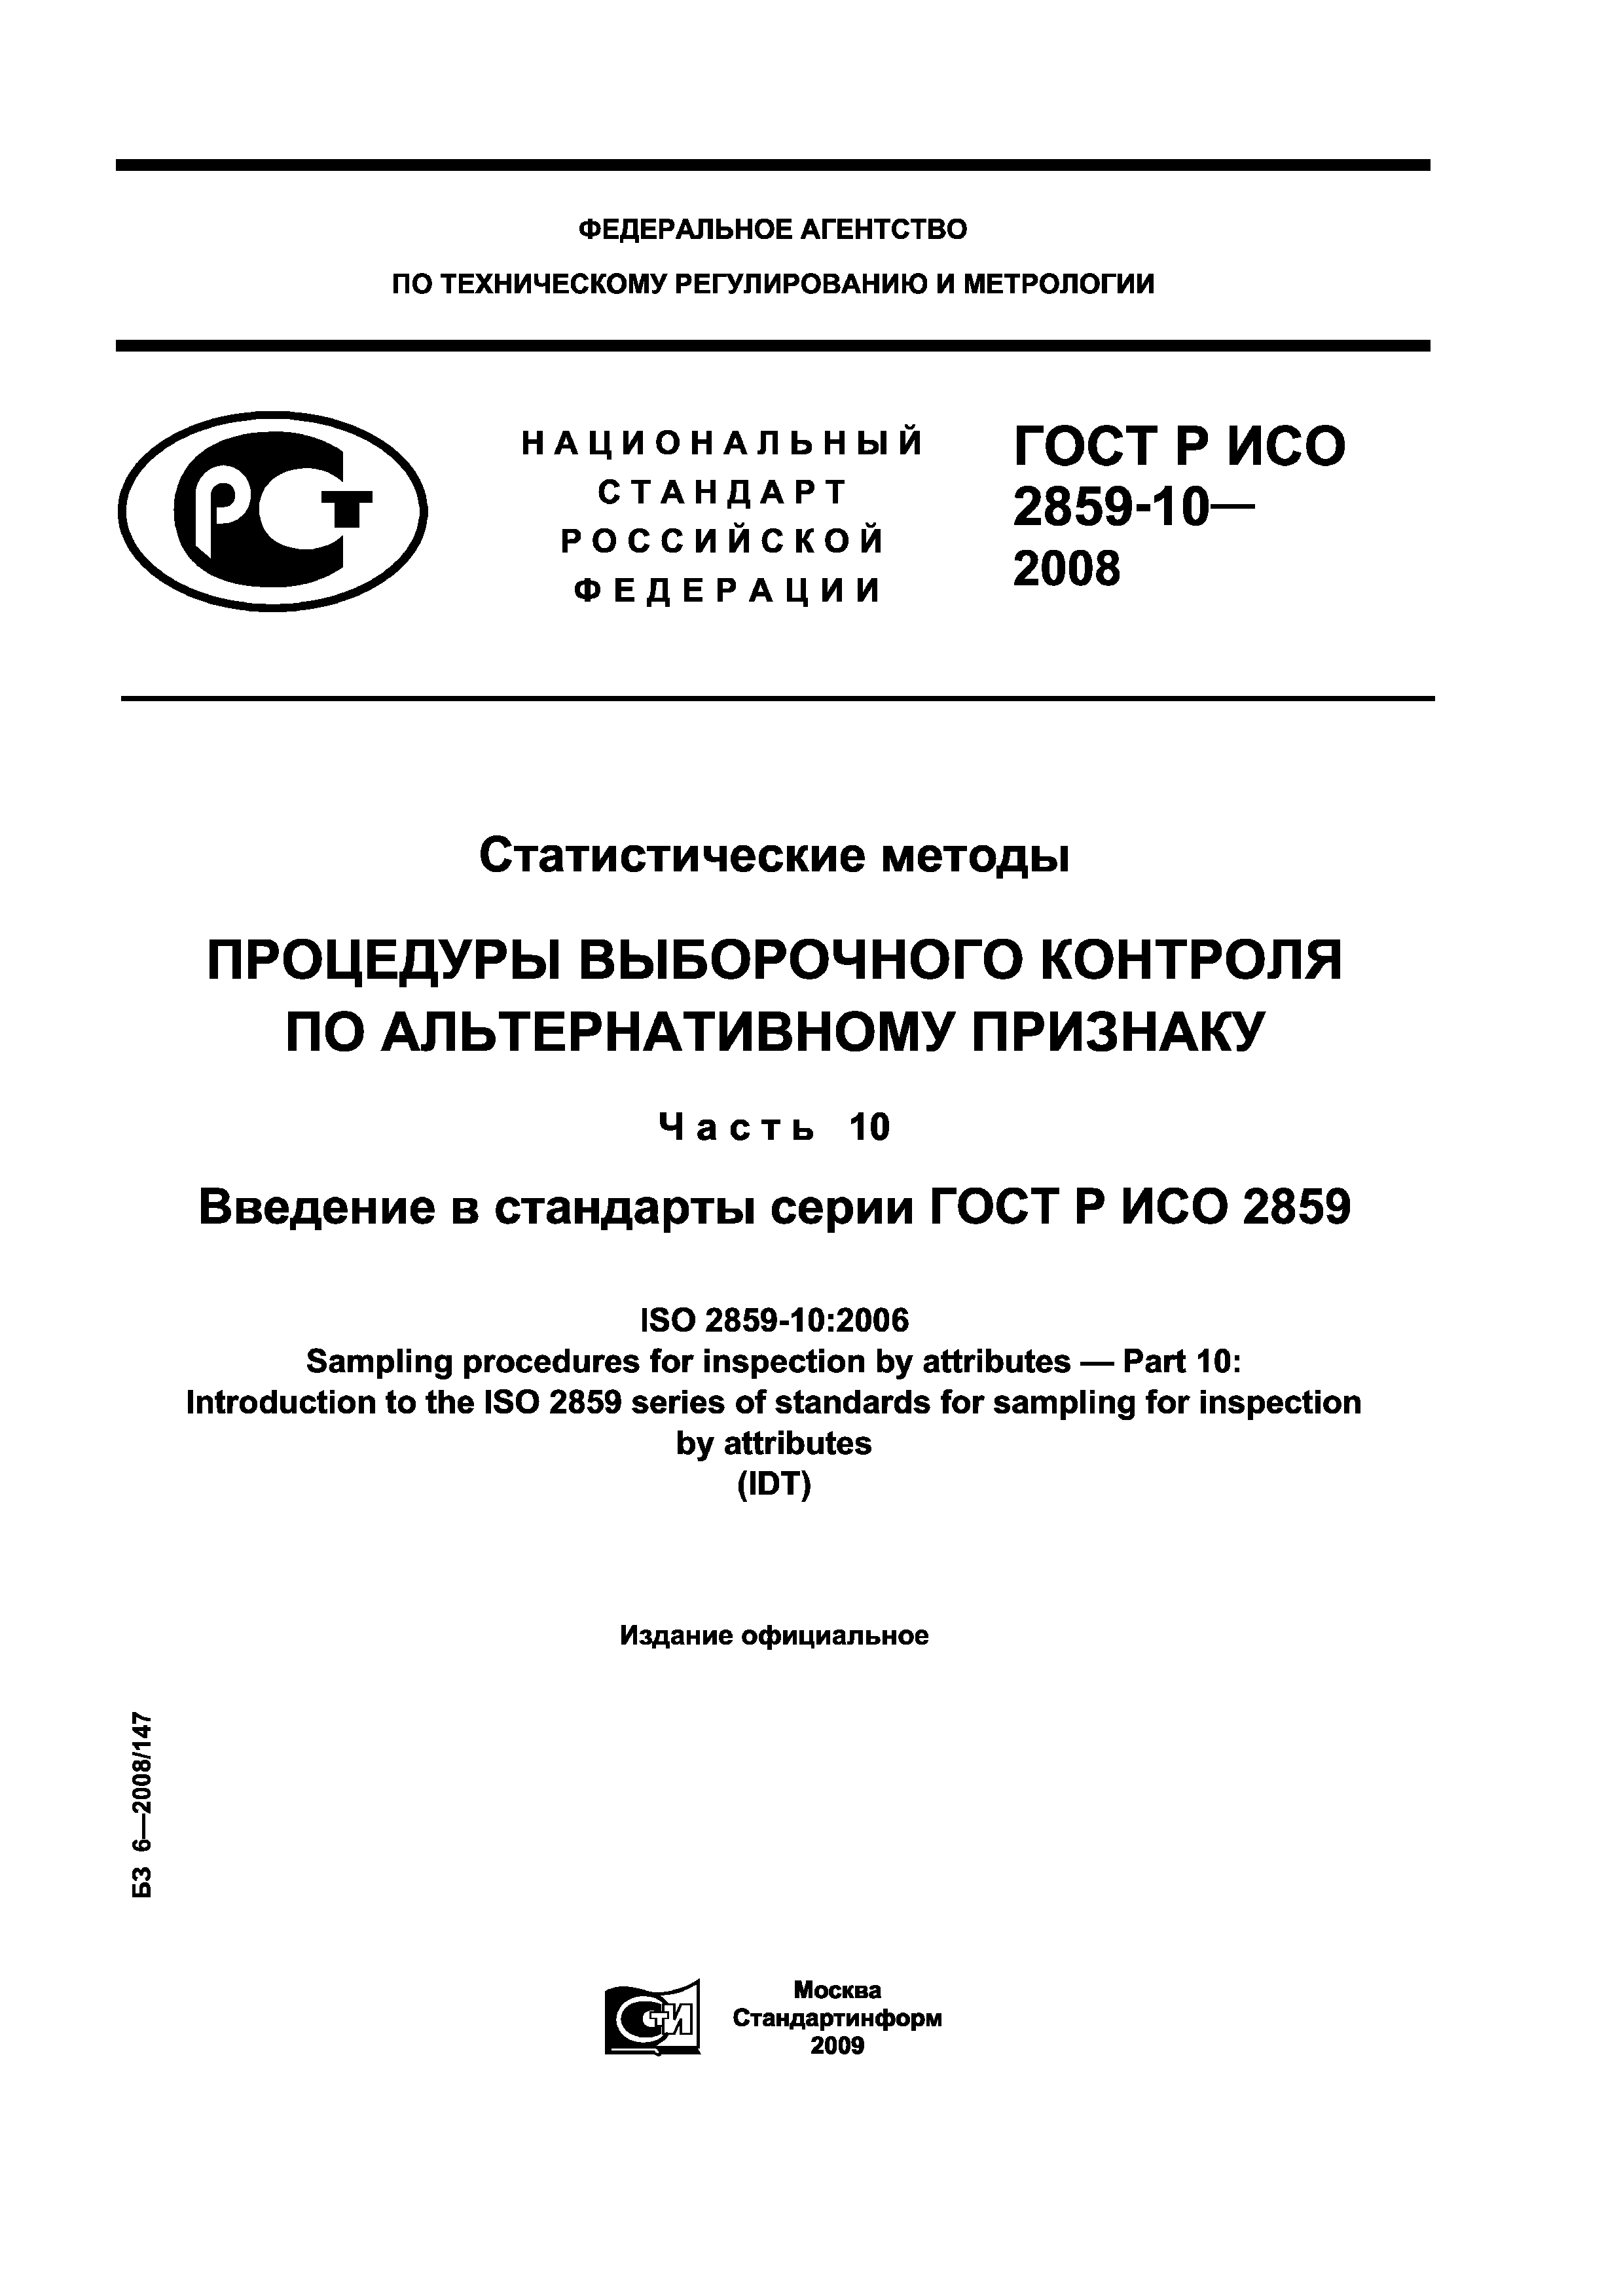 ГОСТ Р ИСО 2859-10-2008